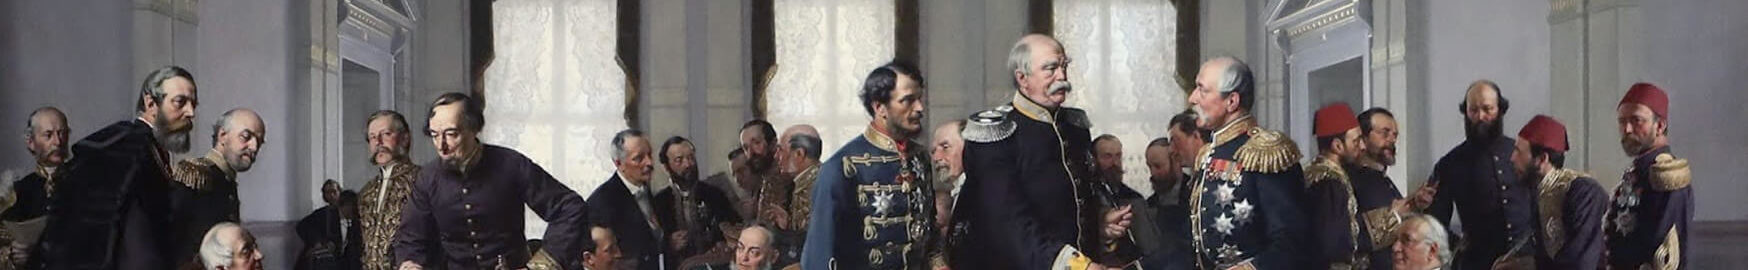 1871 – 1888. Kaiser Wilhelm I. Friedenszeit